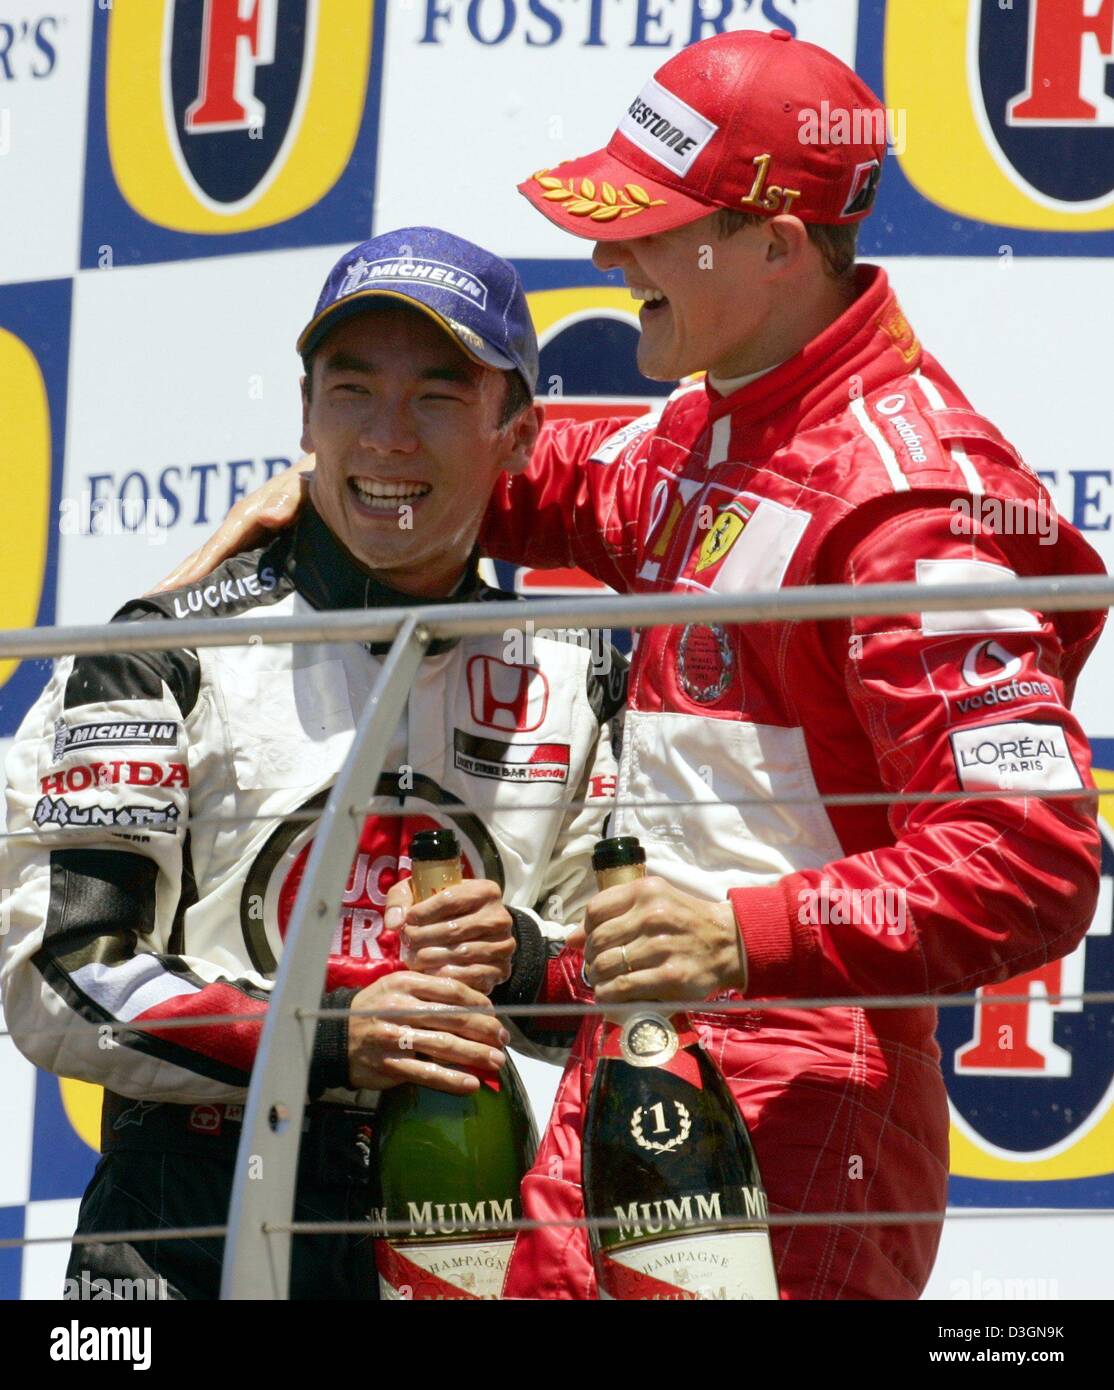 (Dpa) - tedesco di formula one champion Michael Schumacher (R) della Ferrari e il pilota giapponese Takuma Sato di BAR Honda celebrare con bottiglie di champagne dopo Schumacher ha vinto il Gran Premio degli Stati Uniti a Indianapolis, Stati Uniti d'America, 20 giugno 2004. Sato ha preso terzo posto Foto Stock